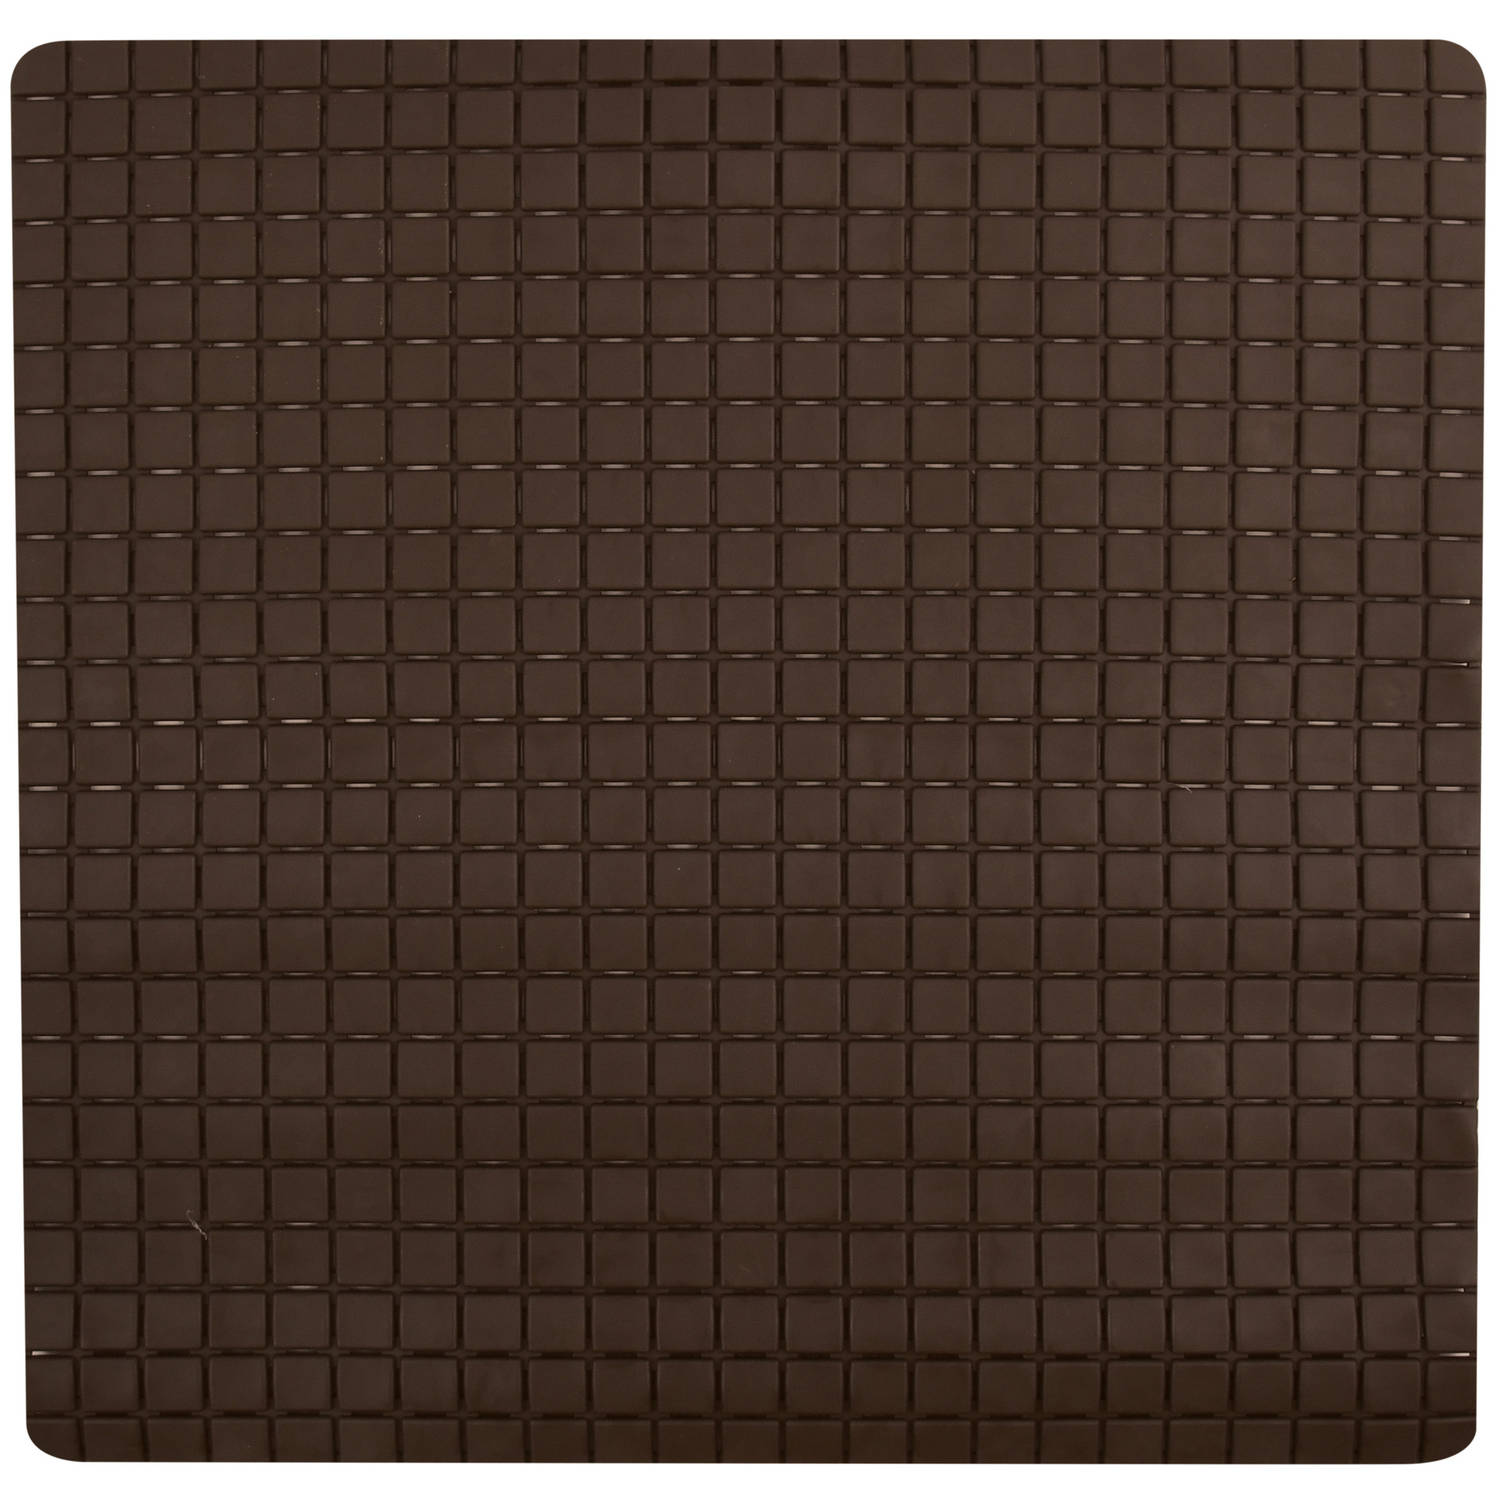 MSV Douche/bad anti-slip mat badkamer - rubber - bruin - 54 x 54 cm - met zuignappen